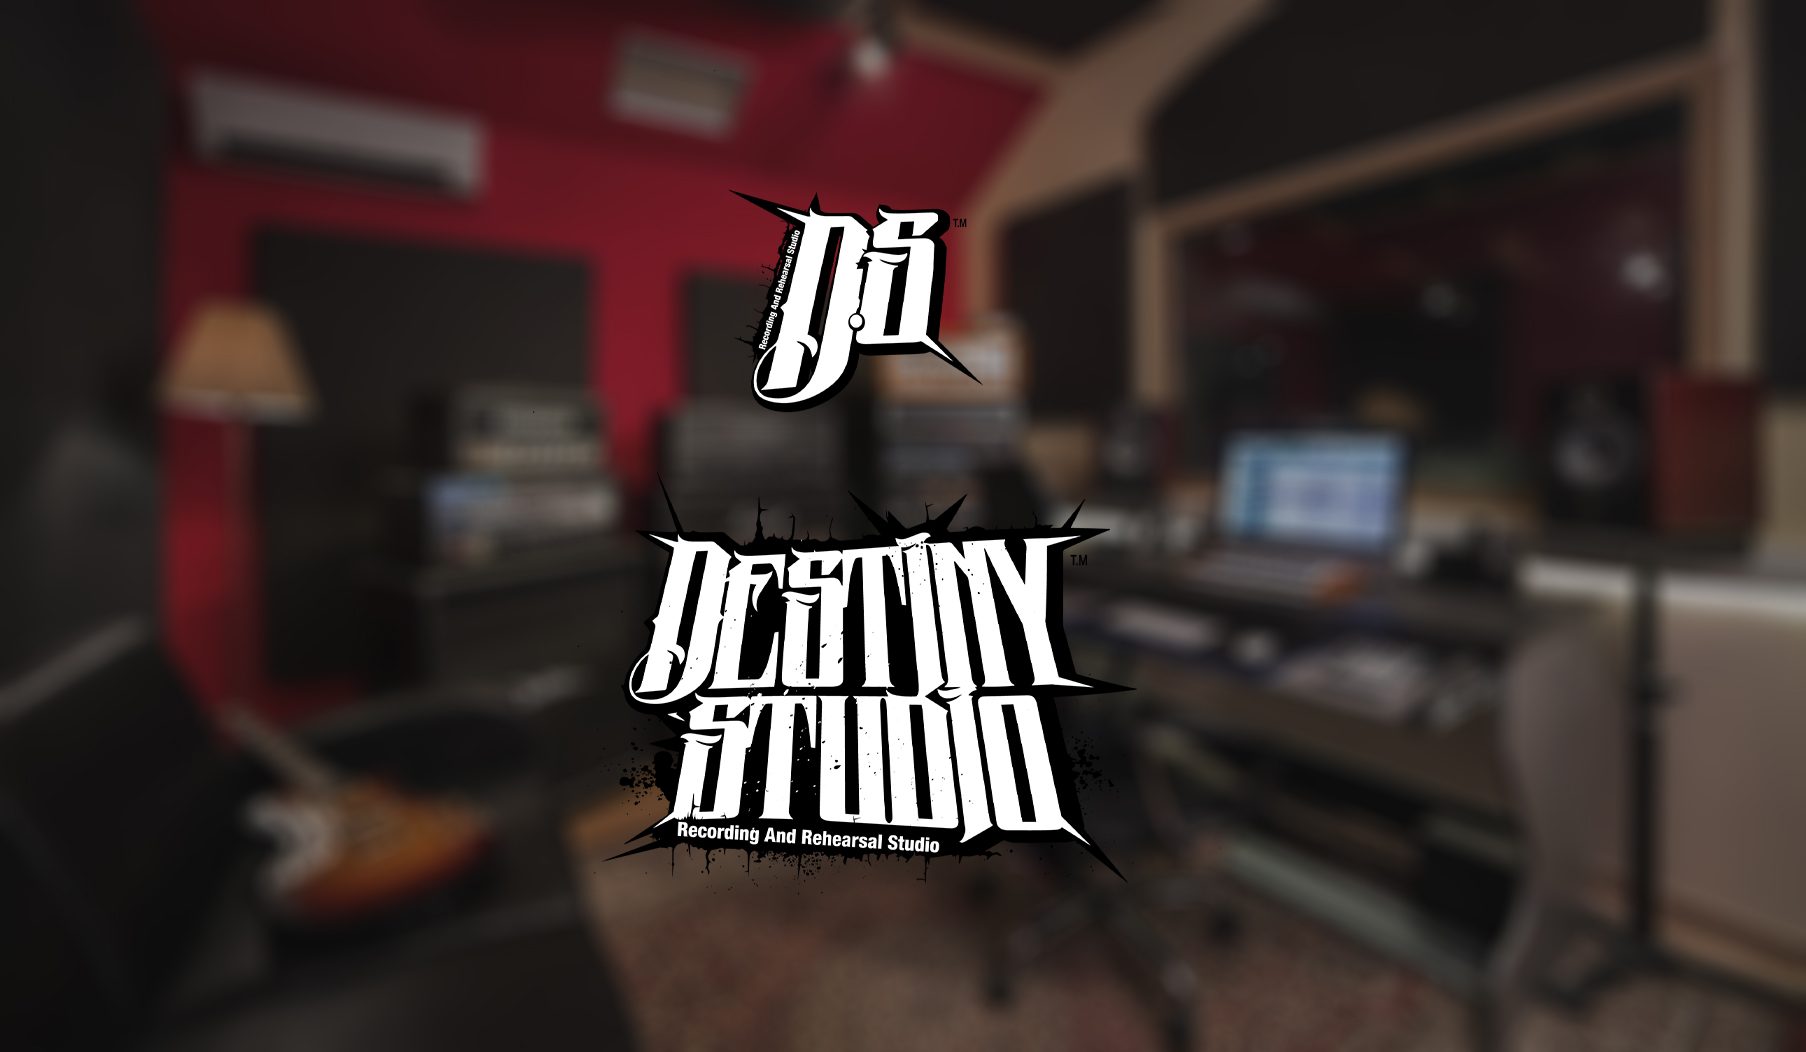 Destiny STudio